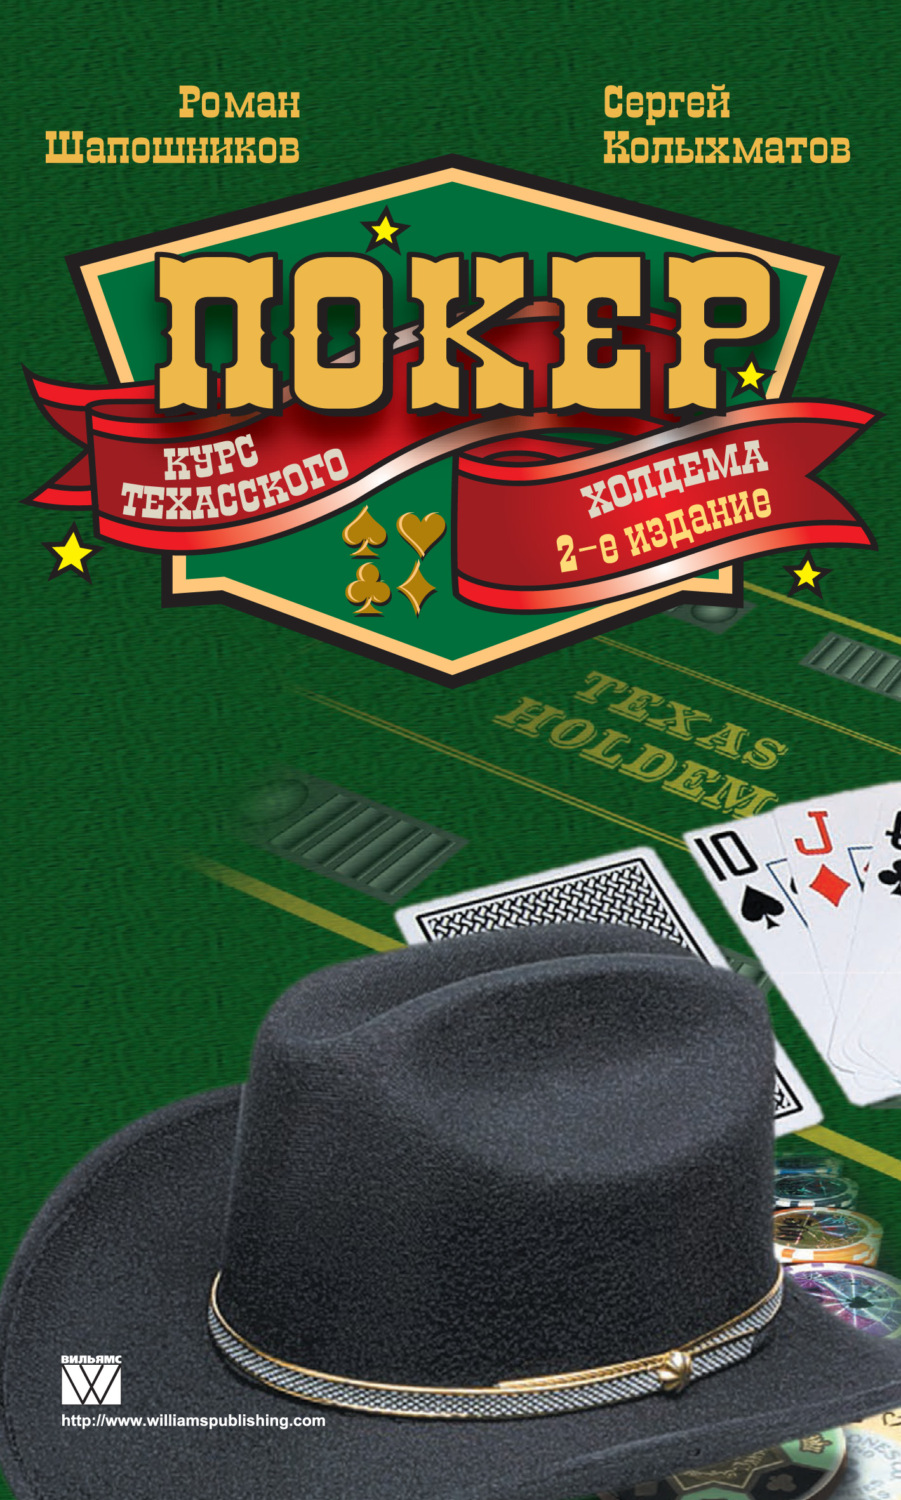 Турнирный покер дэвид склански читать онлайн как скачать фонбет в обход блокировки